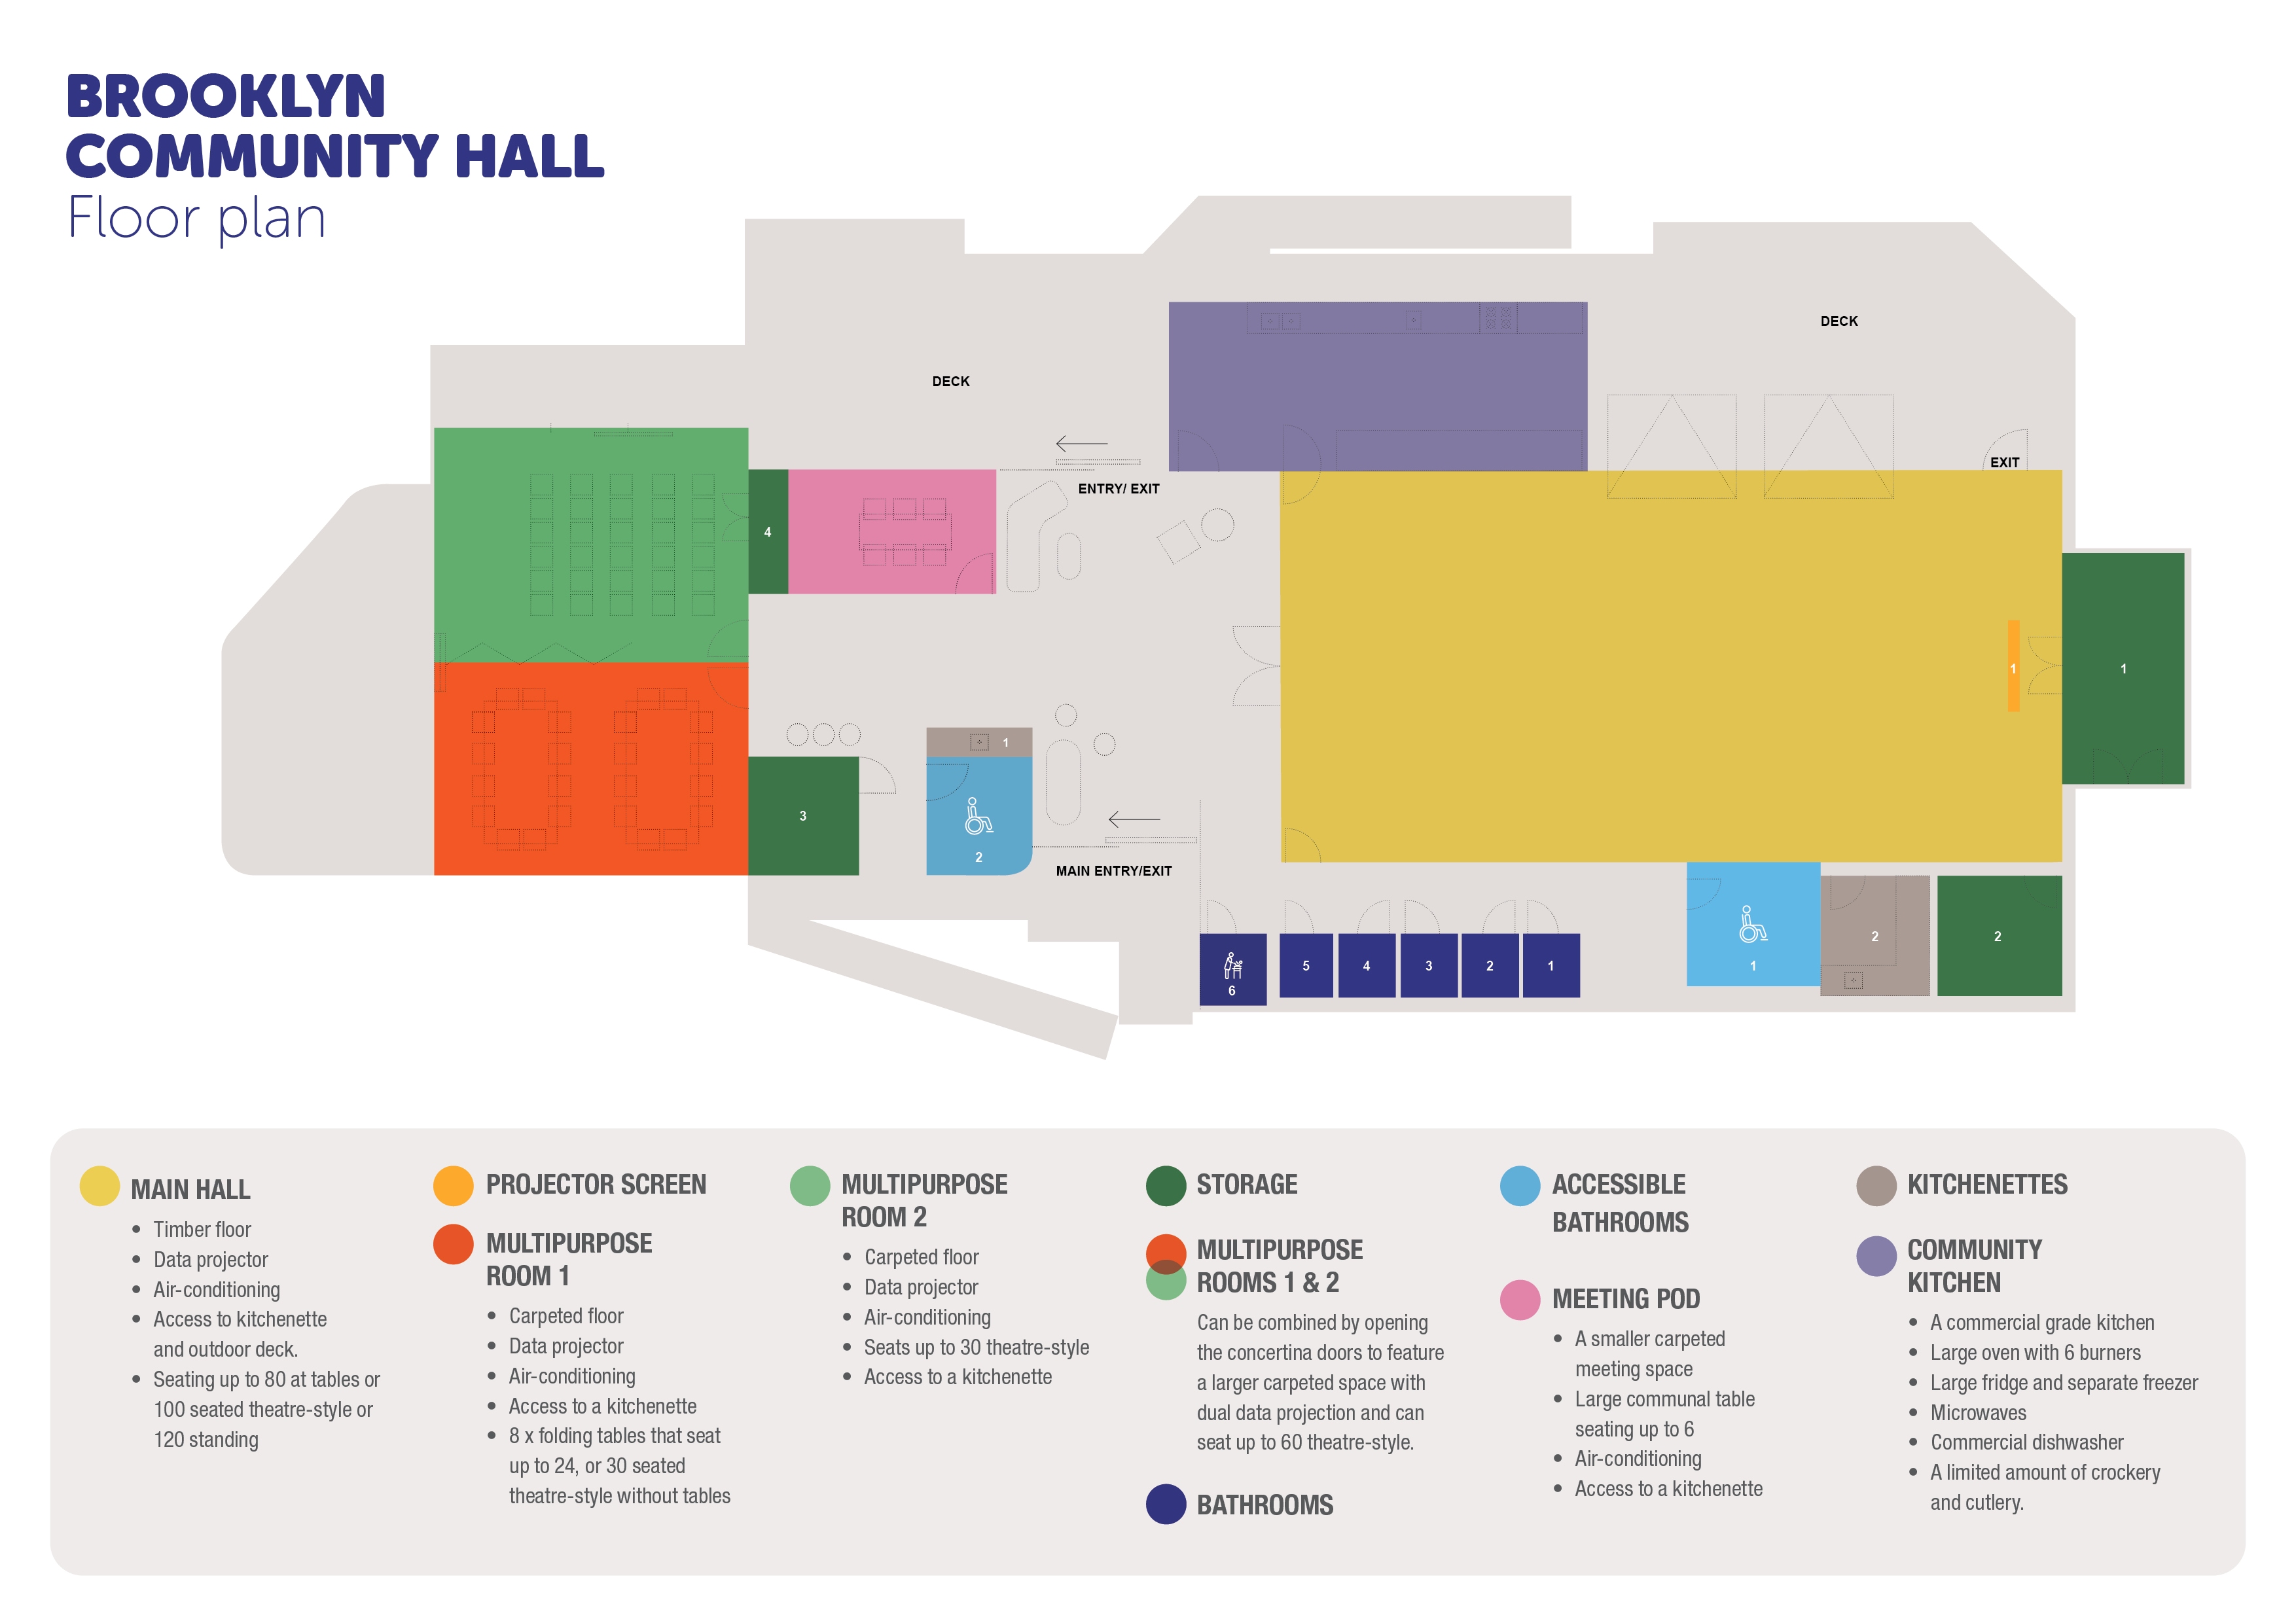 CULTR04220-Brooklyn-Community-Hall-Floorplan-Web-Graphic-v2-small.jpg